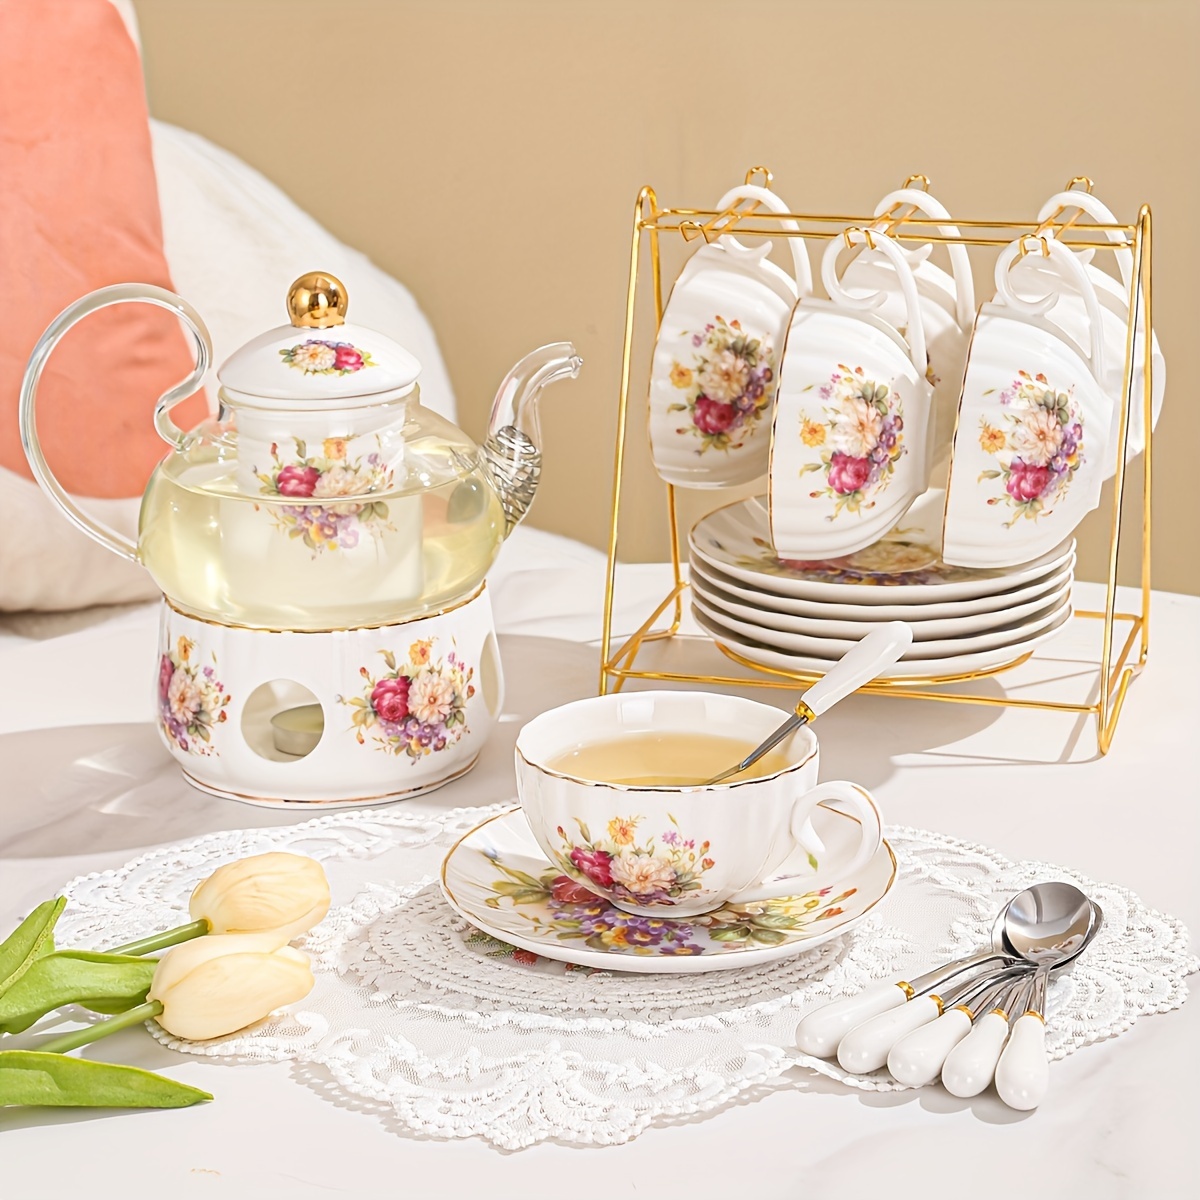 6 Pieces Tea Cup Set/ 6 Piece Ceramic Tea Cup Set/ 6 Pieces Shine Tea Cup  Set/ 6 Piece Tea Mug Set at Rs 59/set, Tea Cup Set in Noida